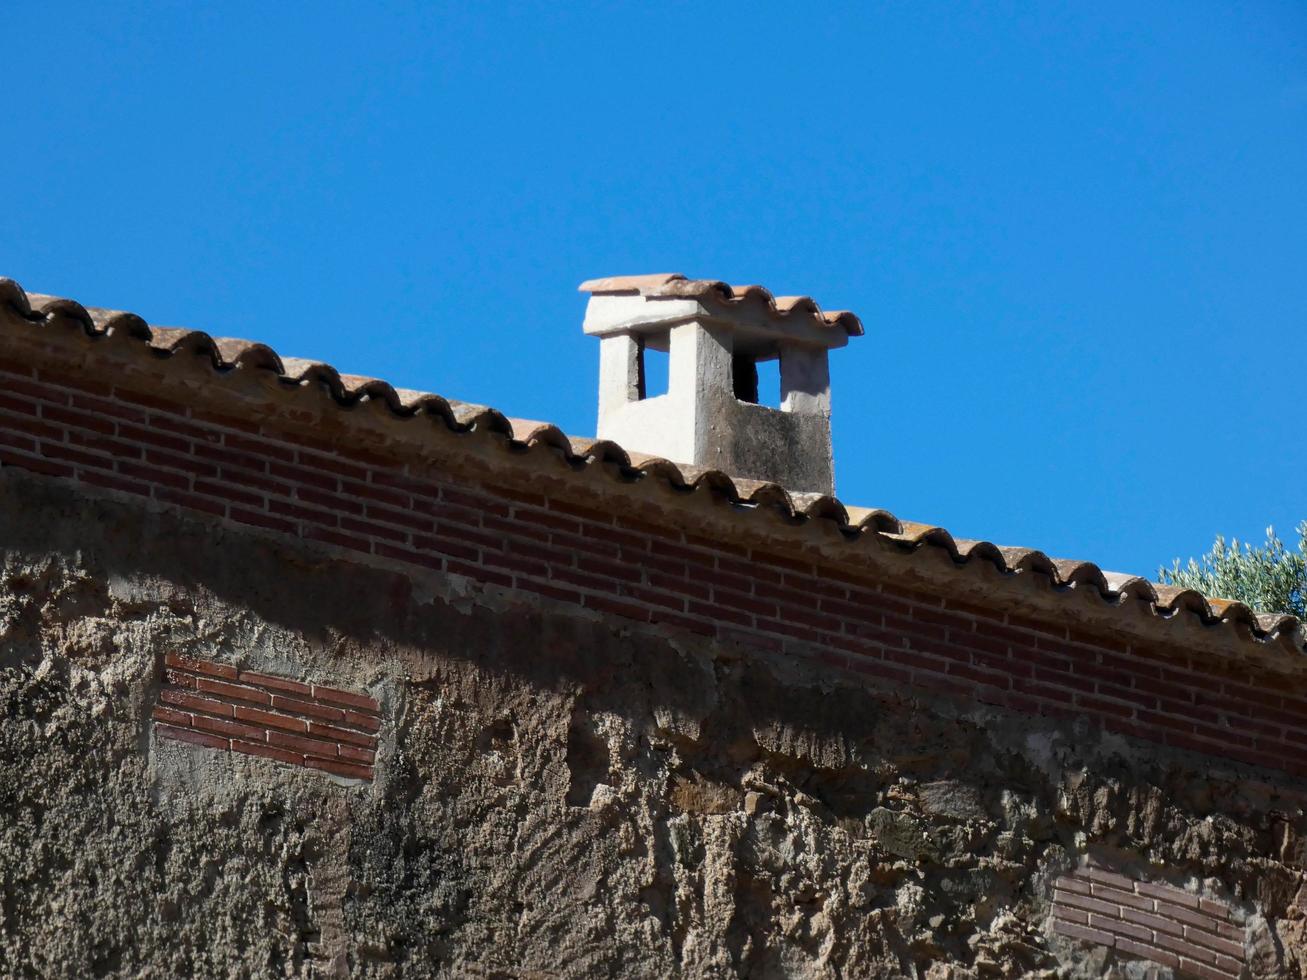 maison de montagne typiquement catalane dans les environs de barcelone, espagne photo